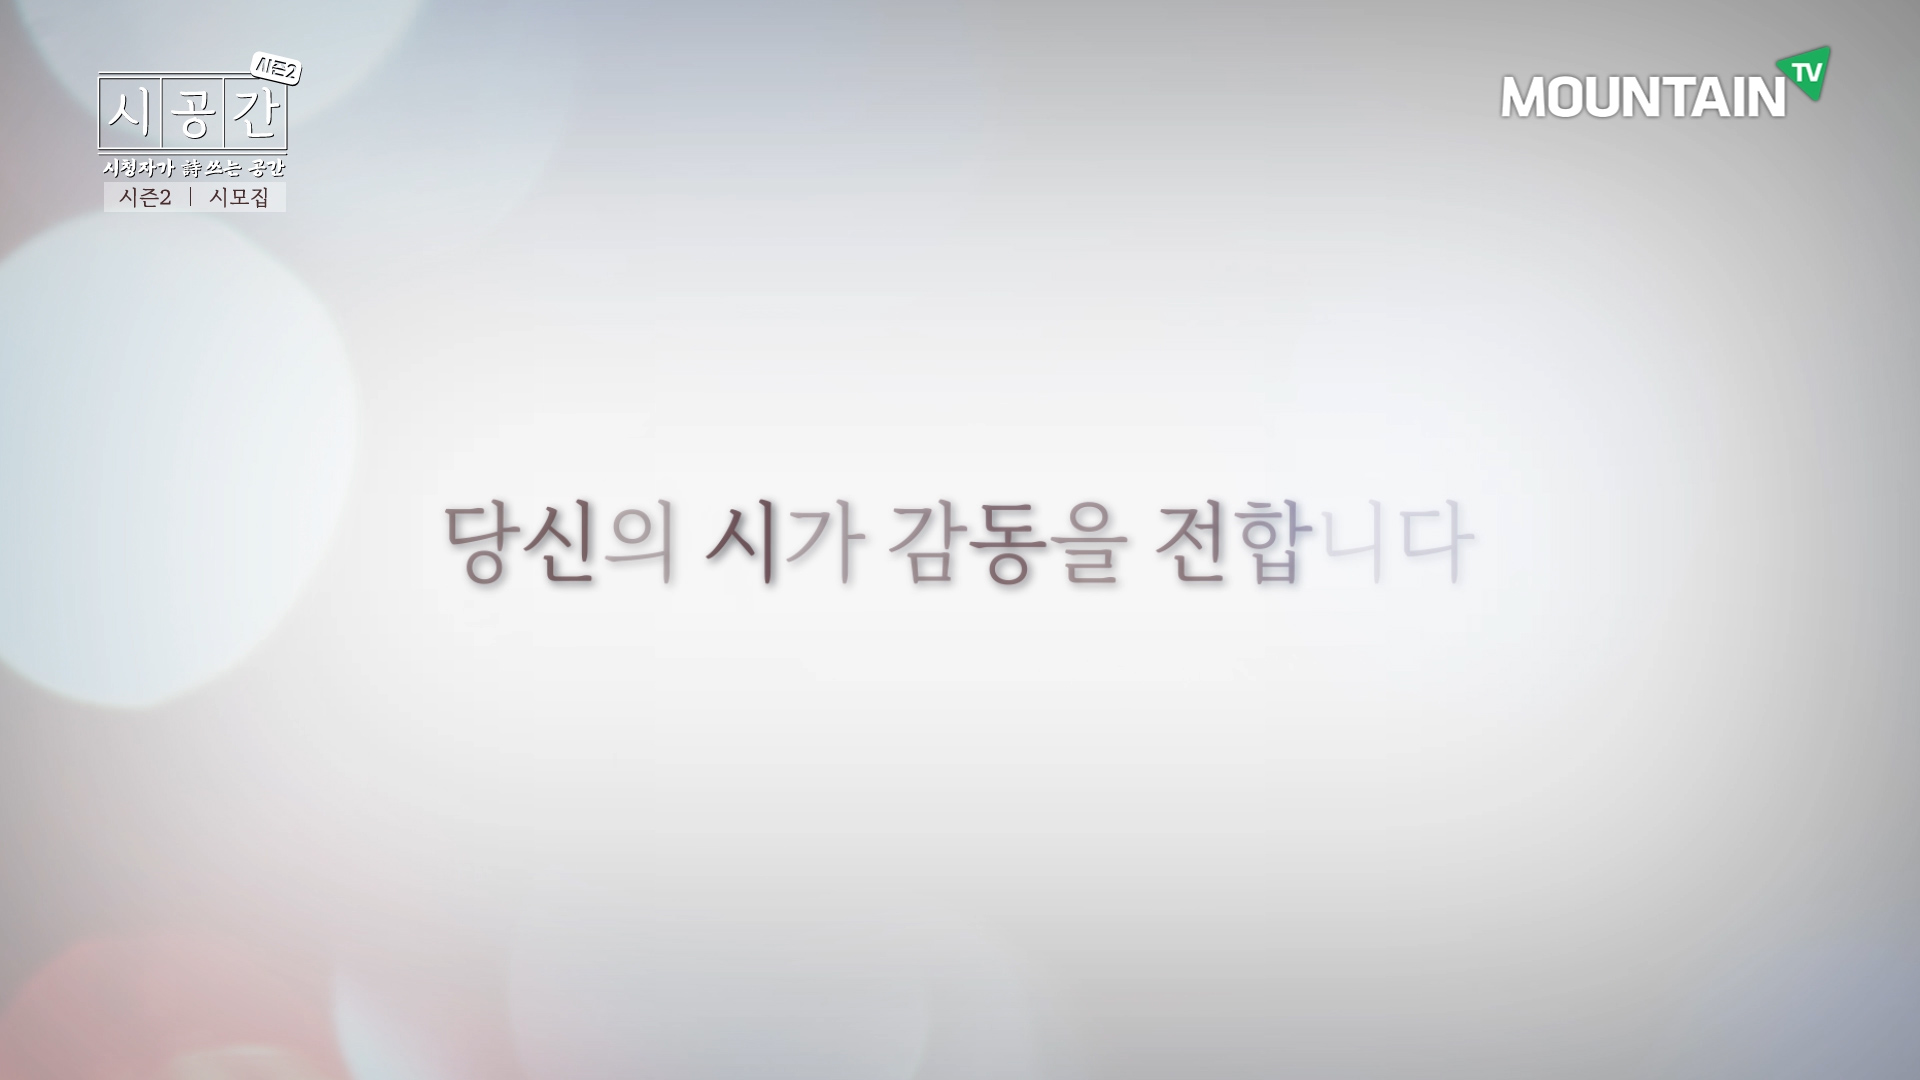 3 ‘시공간 시즌2’ 시 모집 광고 영상 中.jpg